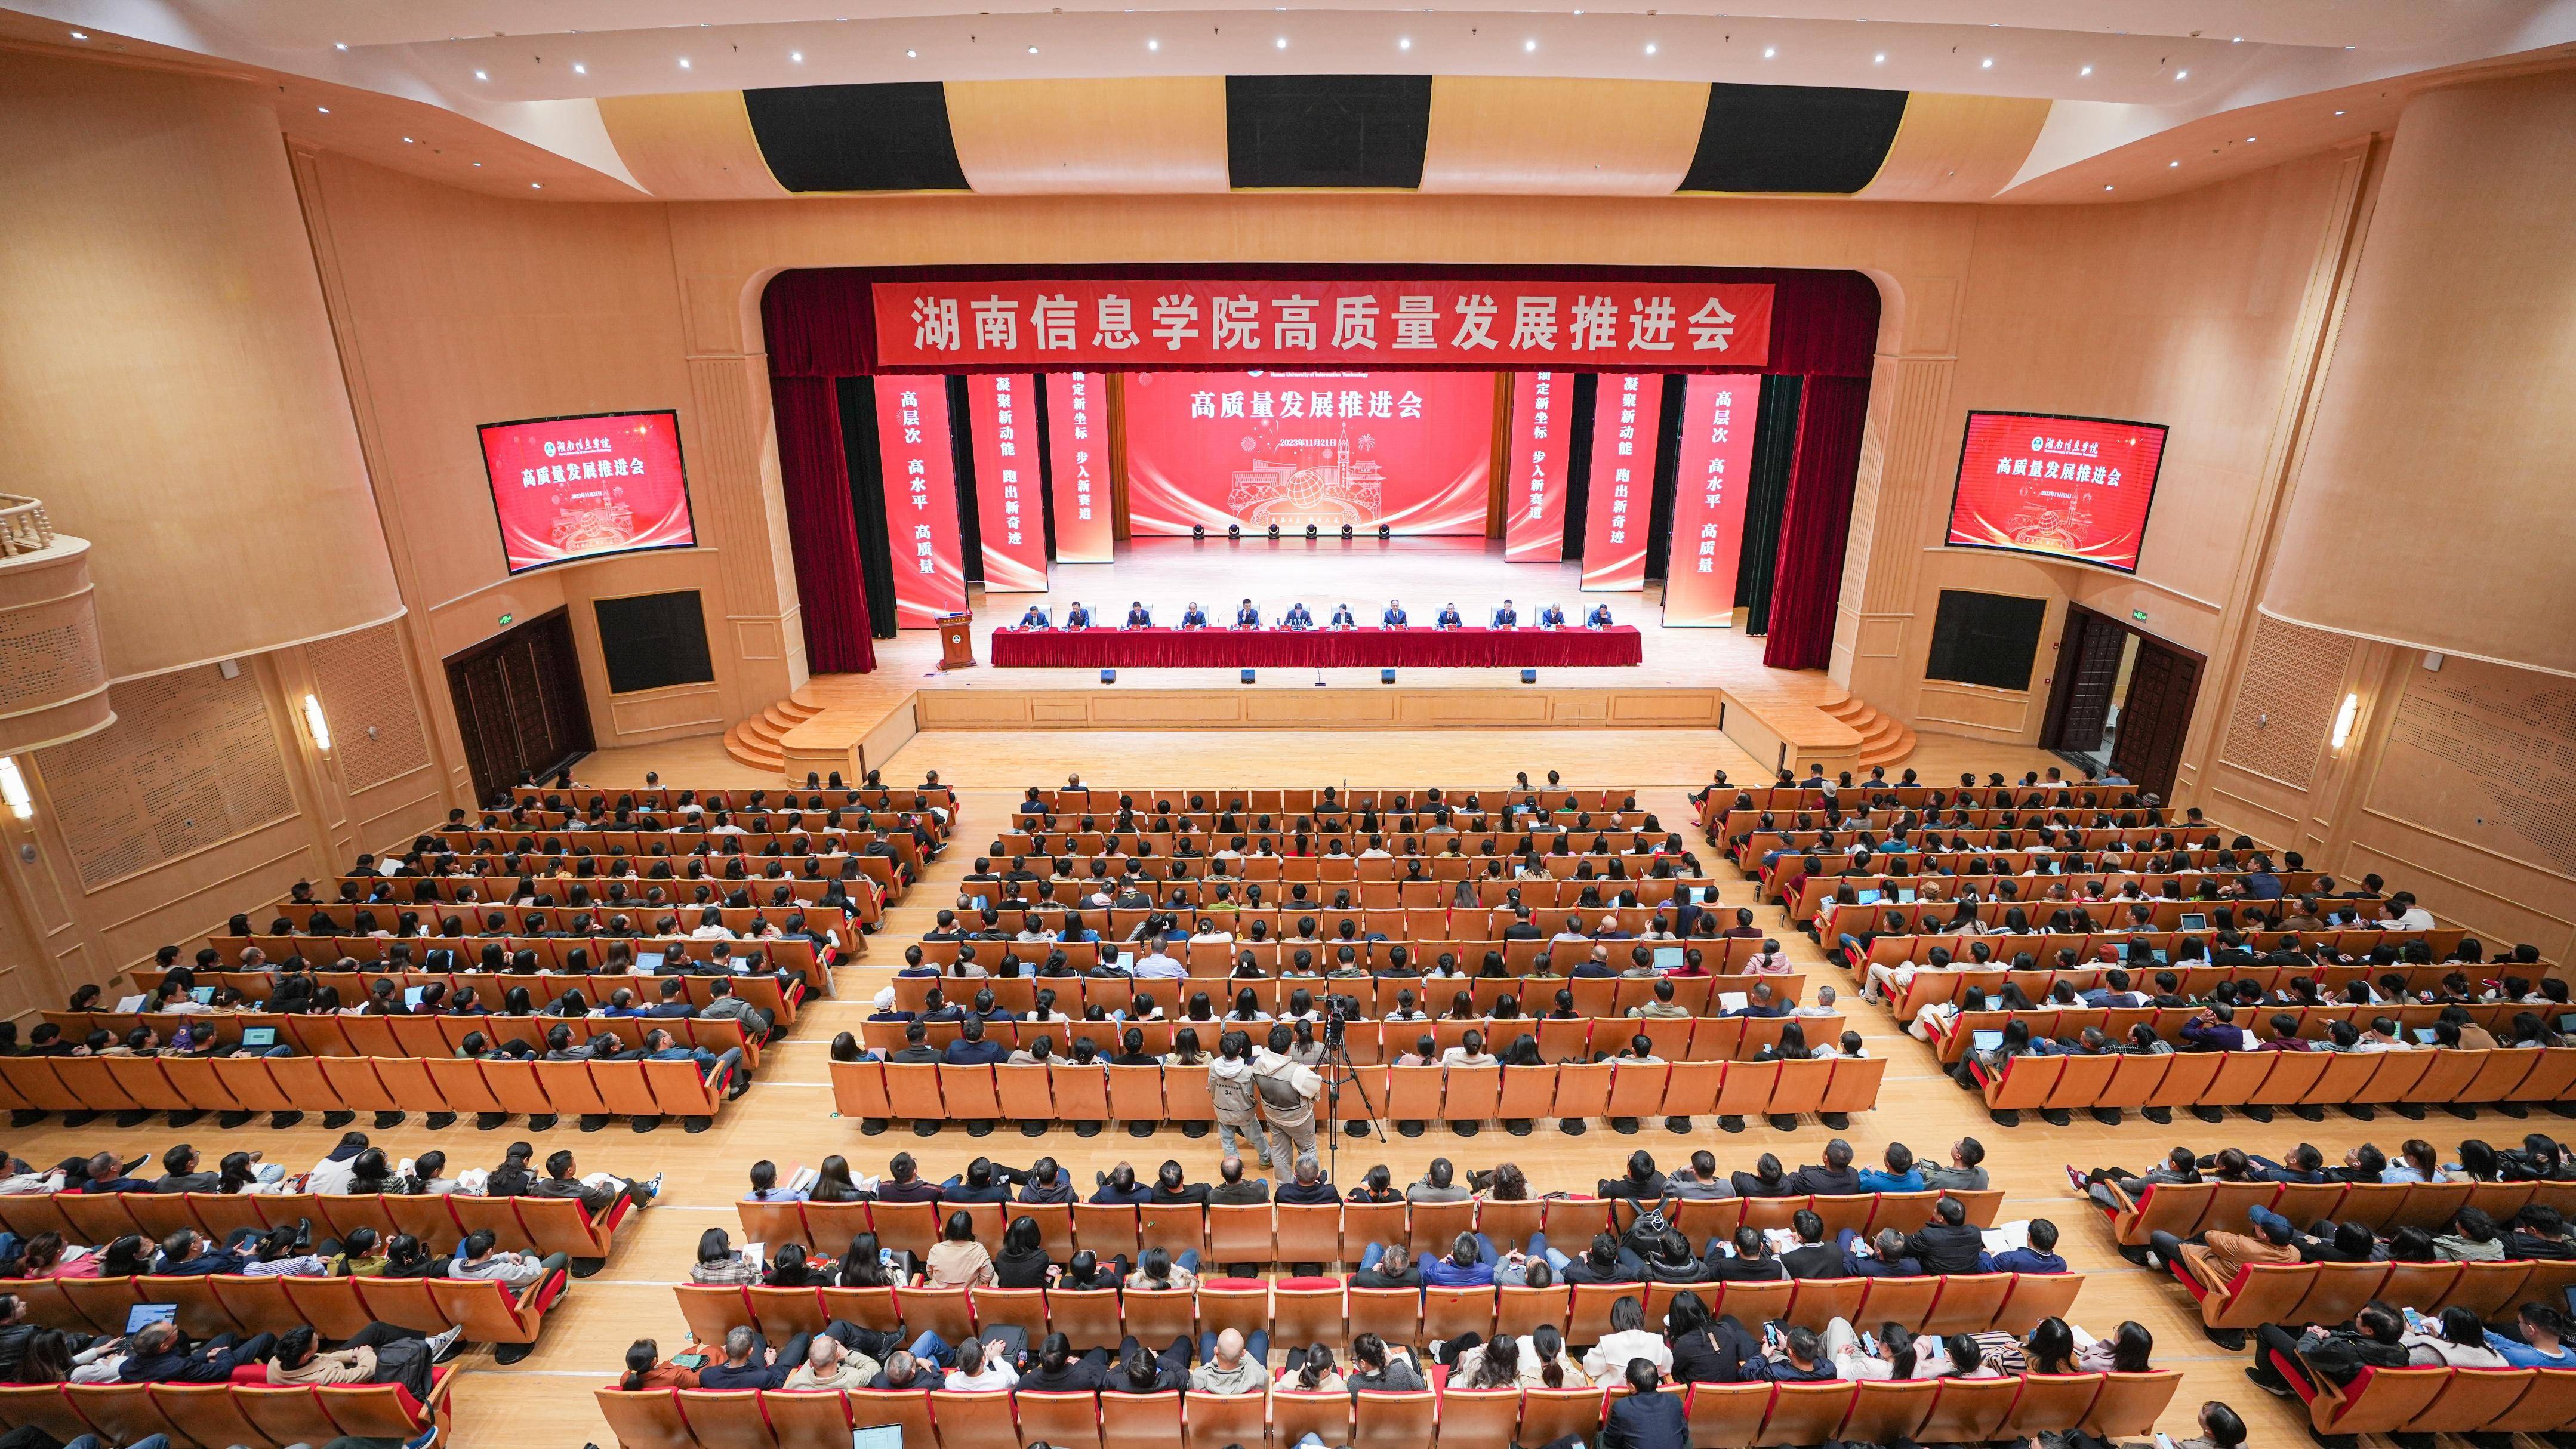 湖南信息学院:2028年硕士研究生招生,2035年更名为湖南信息大学